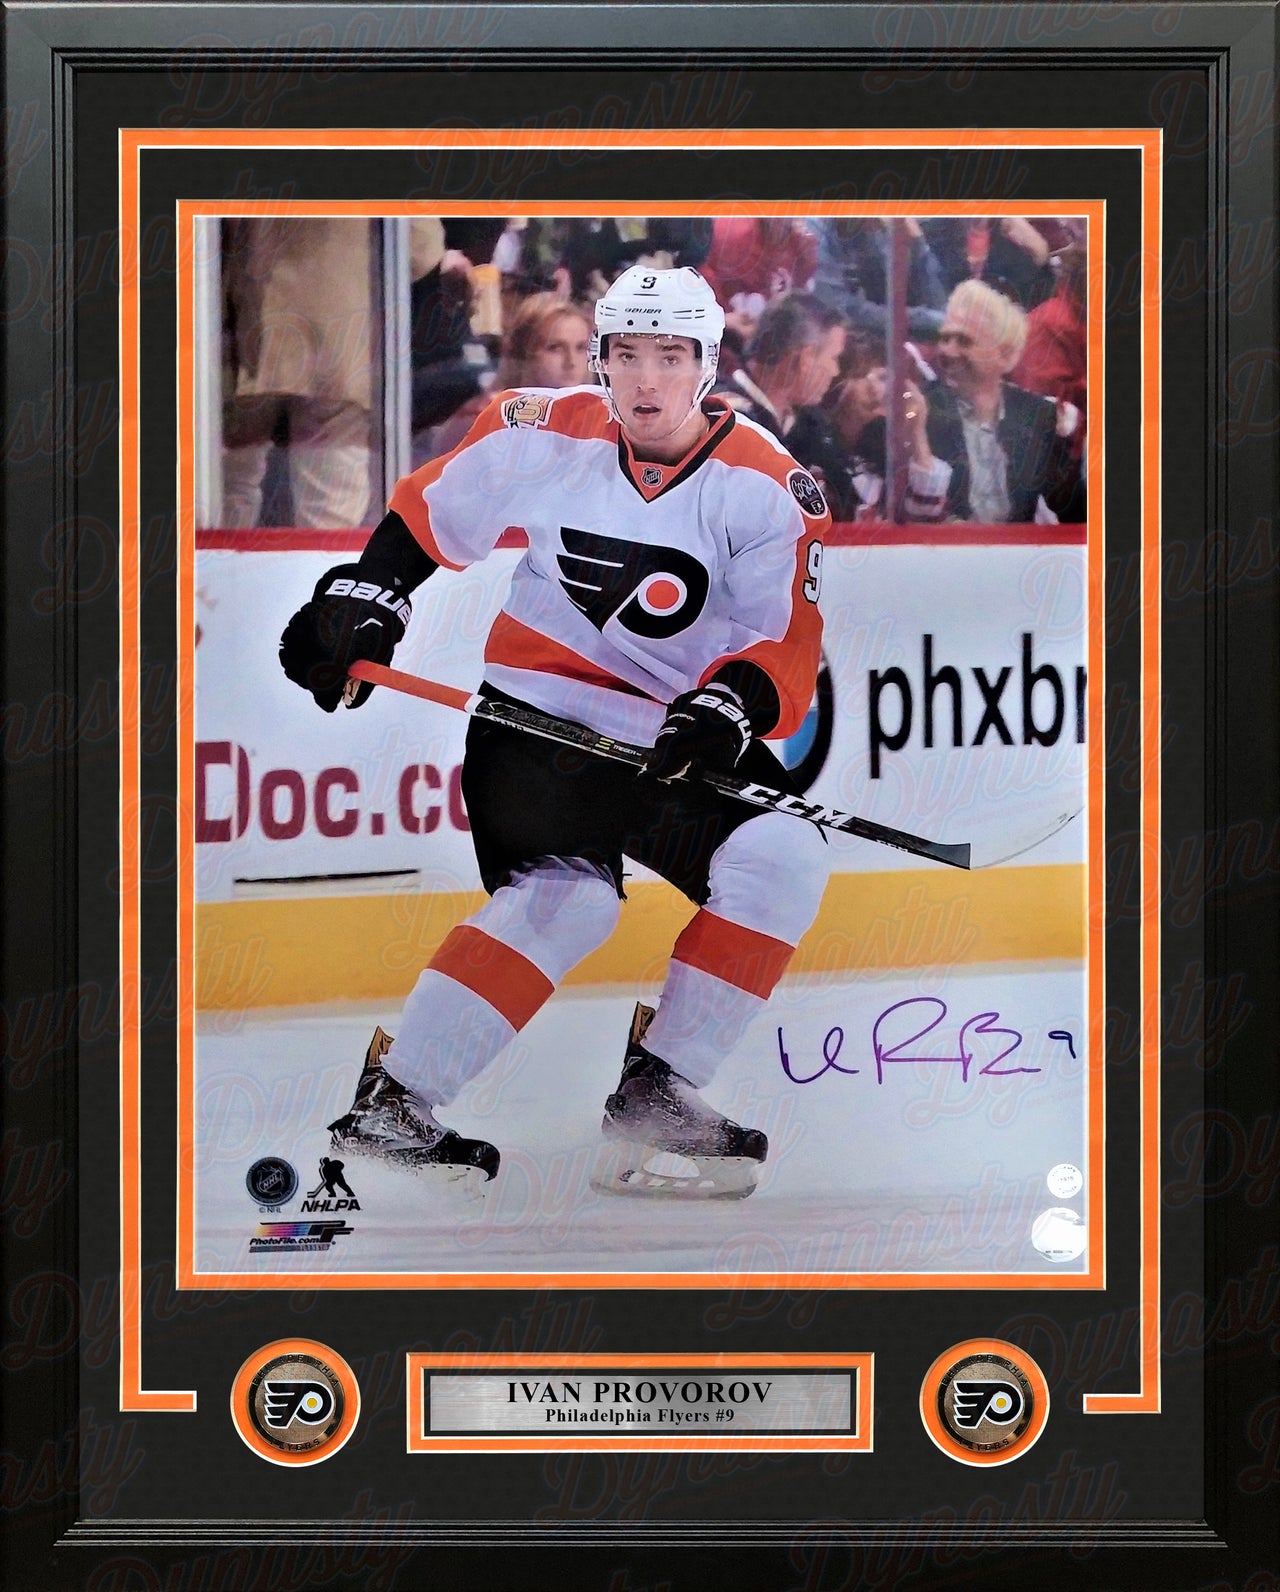 Ivan Provorov Skating Autographed Philadelphia Flyers 16" x 20" Framed Hockey Photo - Dynasty Sports & Framing 